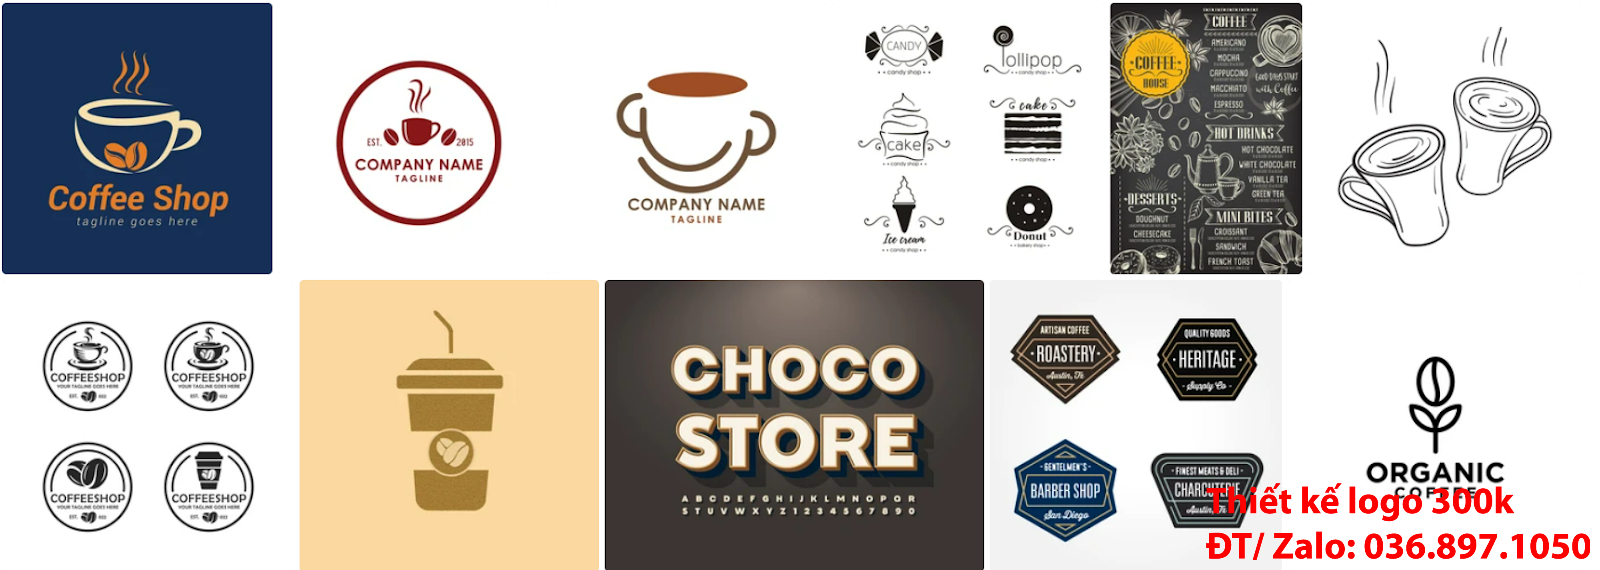 Đơn vị tạo mẫu logo cà phê cafe coffee đẹp miễn phí giá rẻ 300k 500k